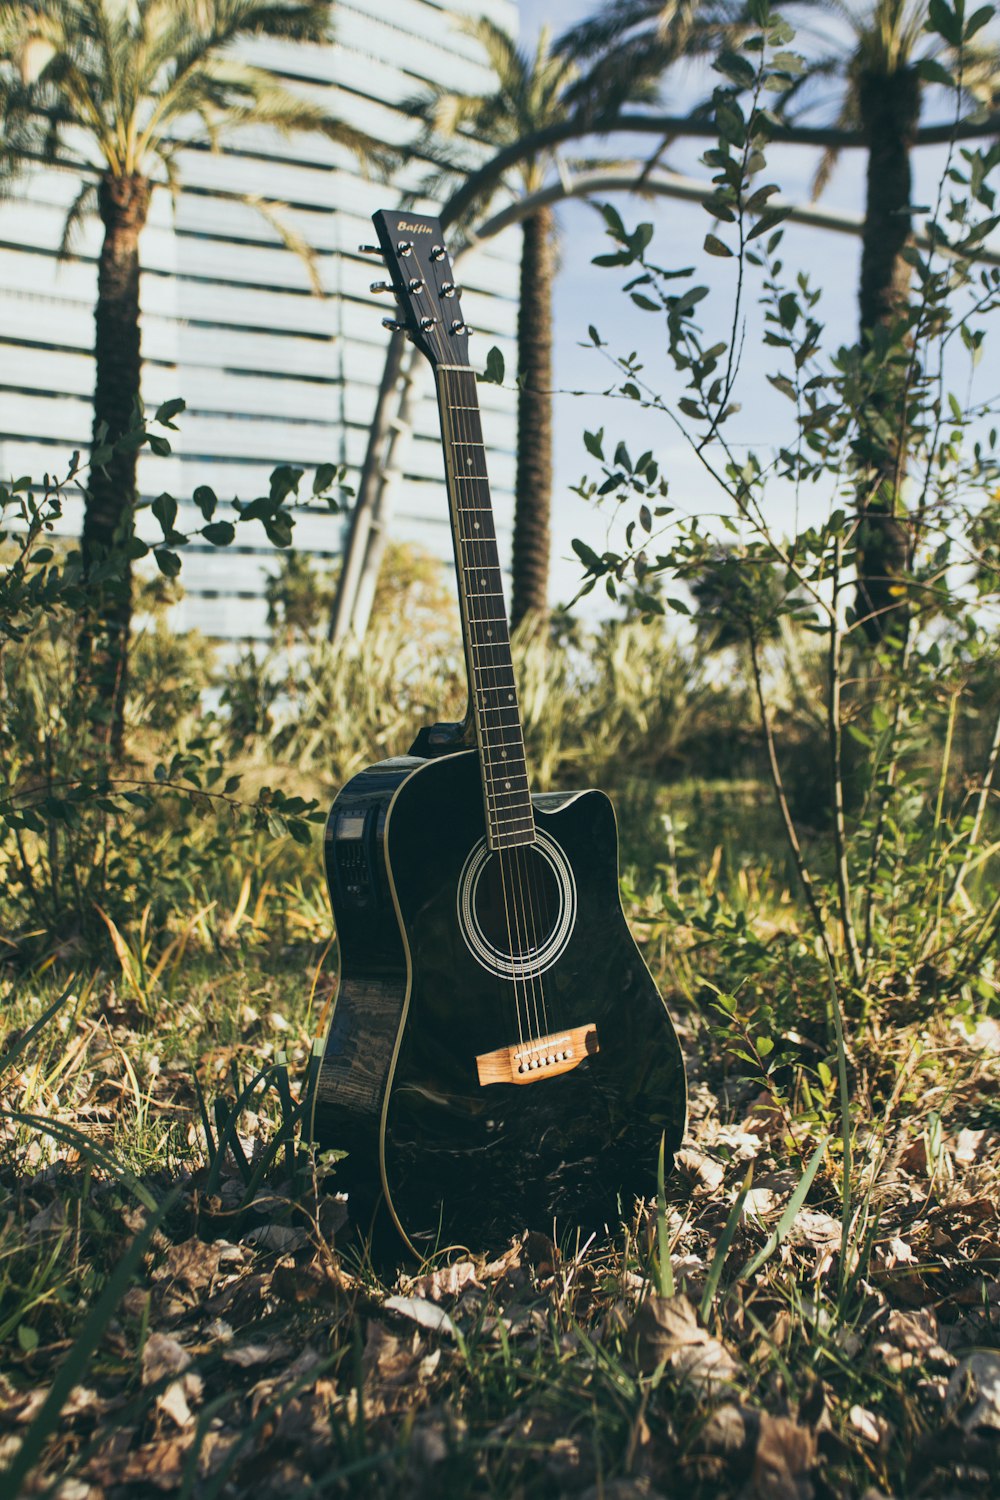 chitarra acustica nera su erba verde